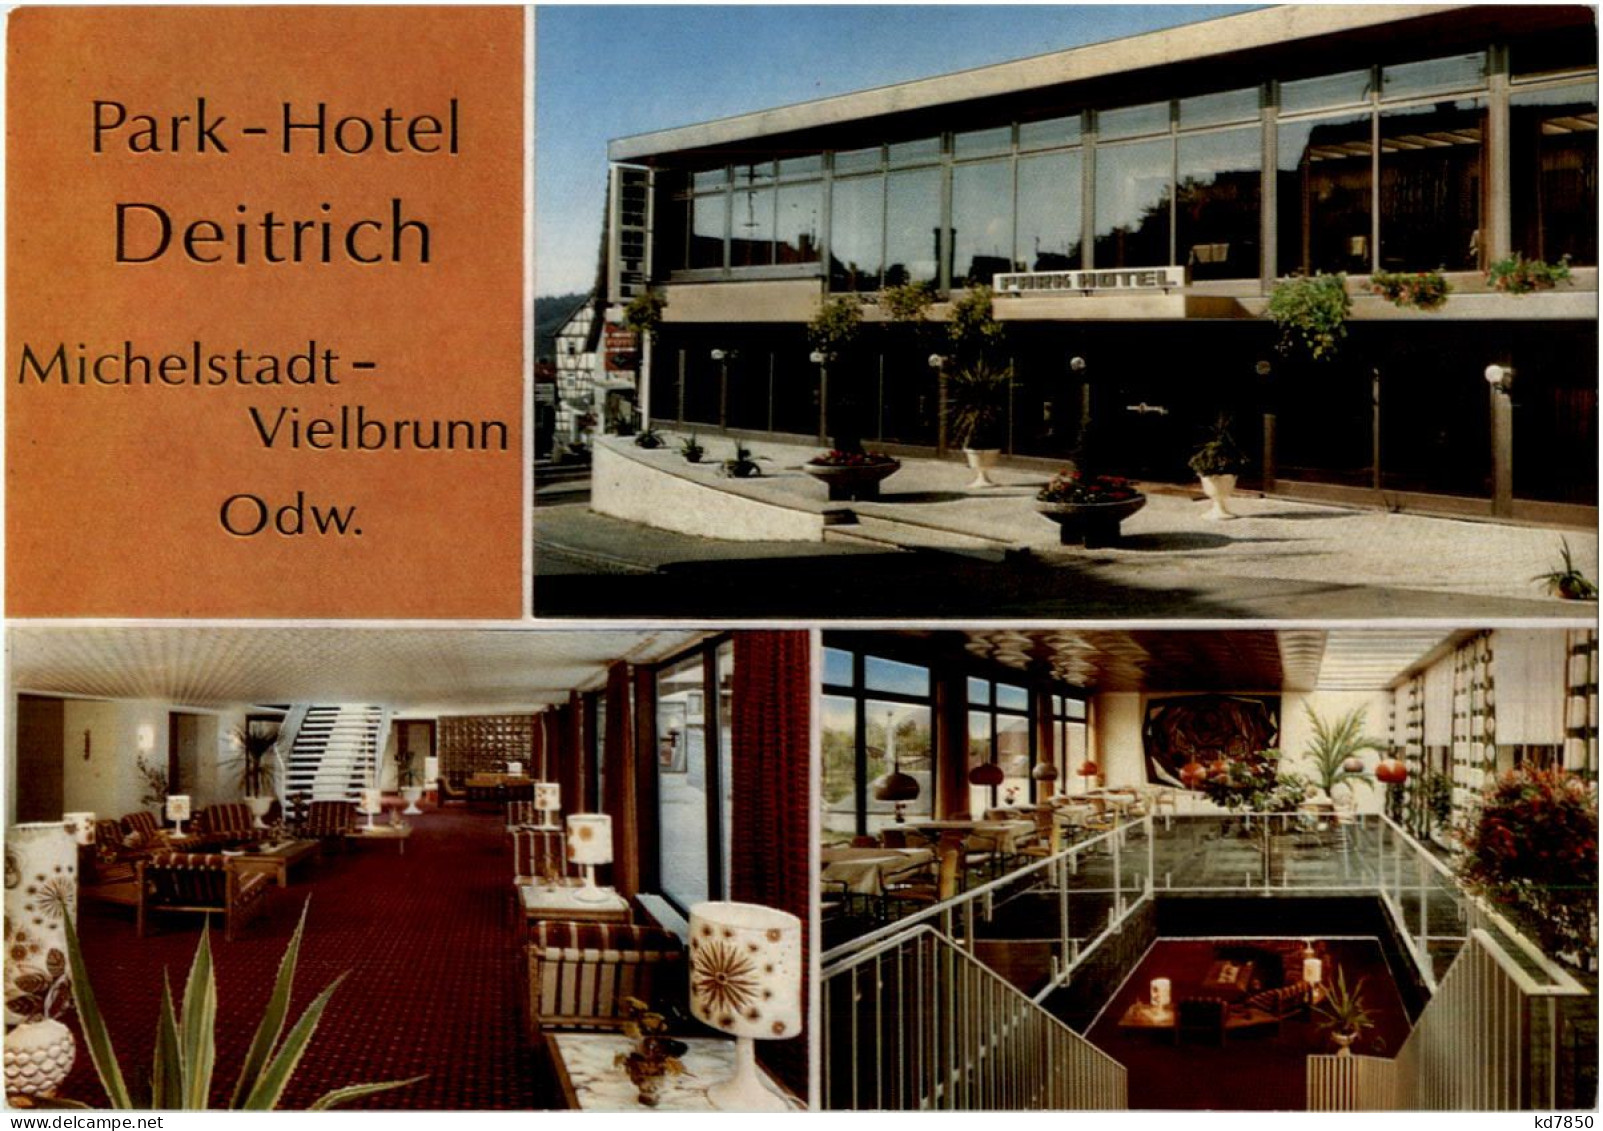 Michelstadt-Vielbrunn - Park-Hotel Deitrich - Michelstadt